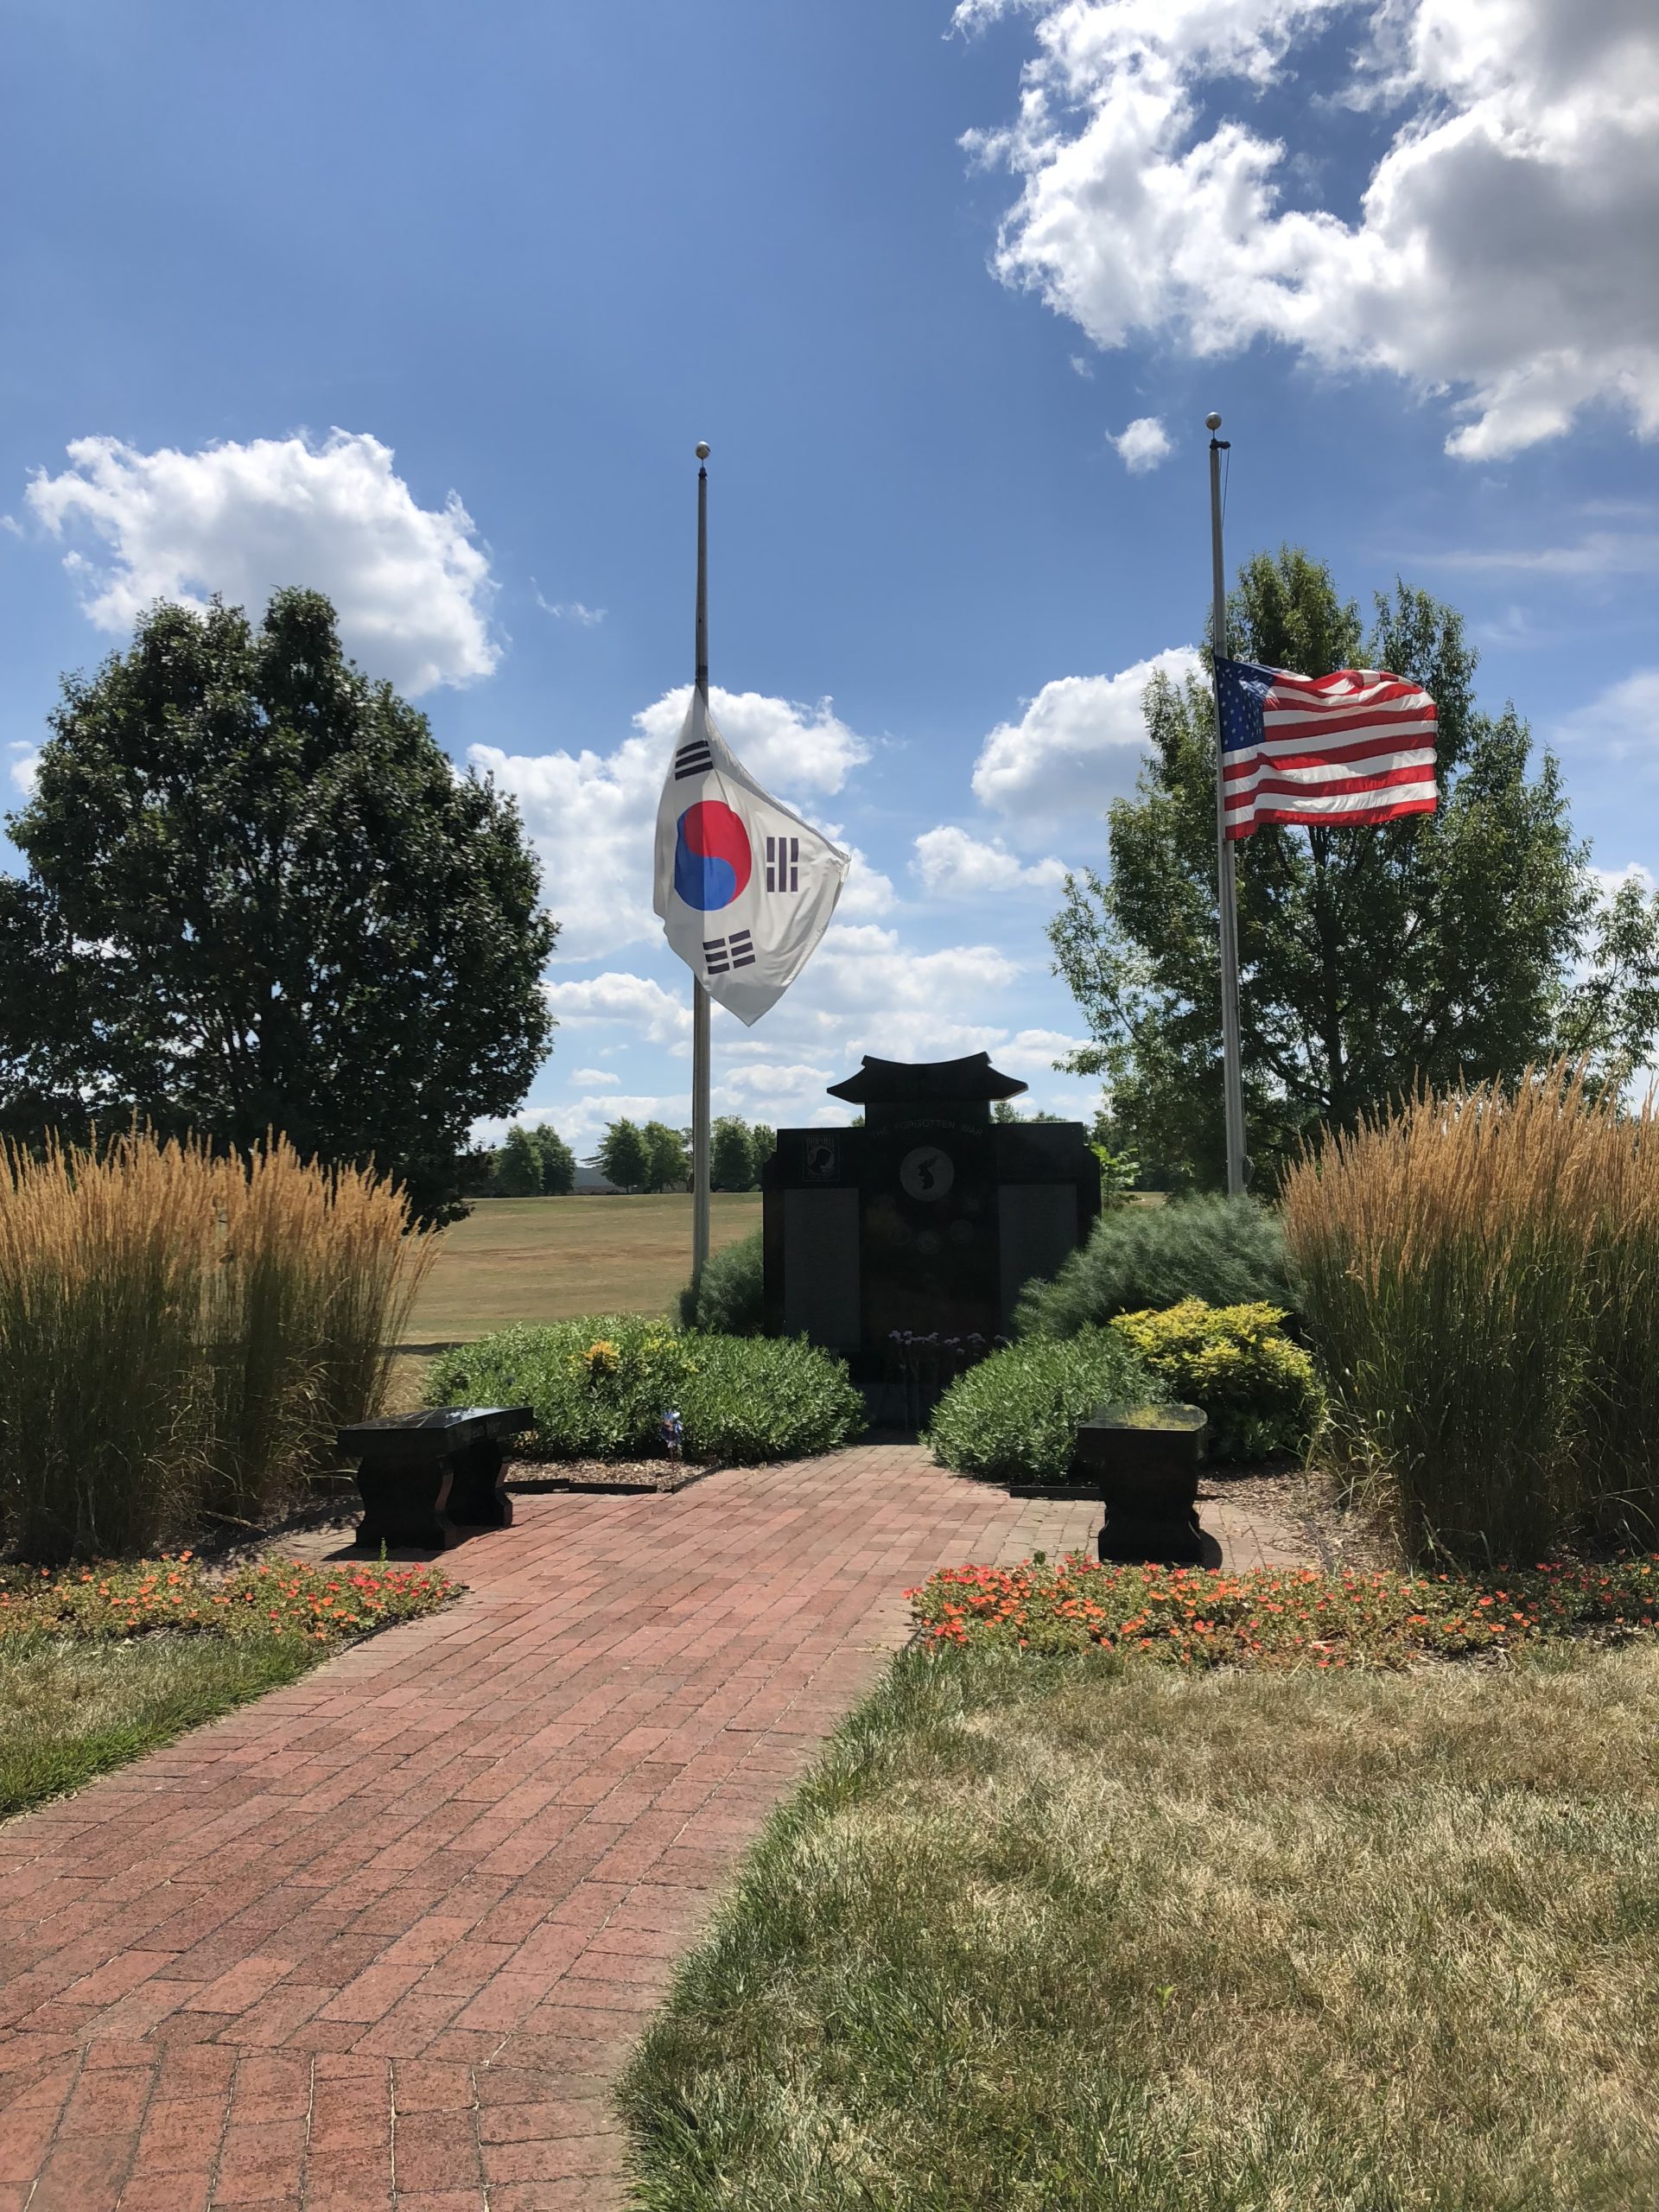 Korean War Memorials - Wilmington